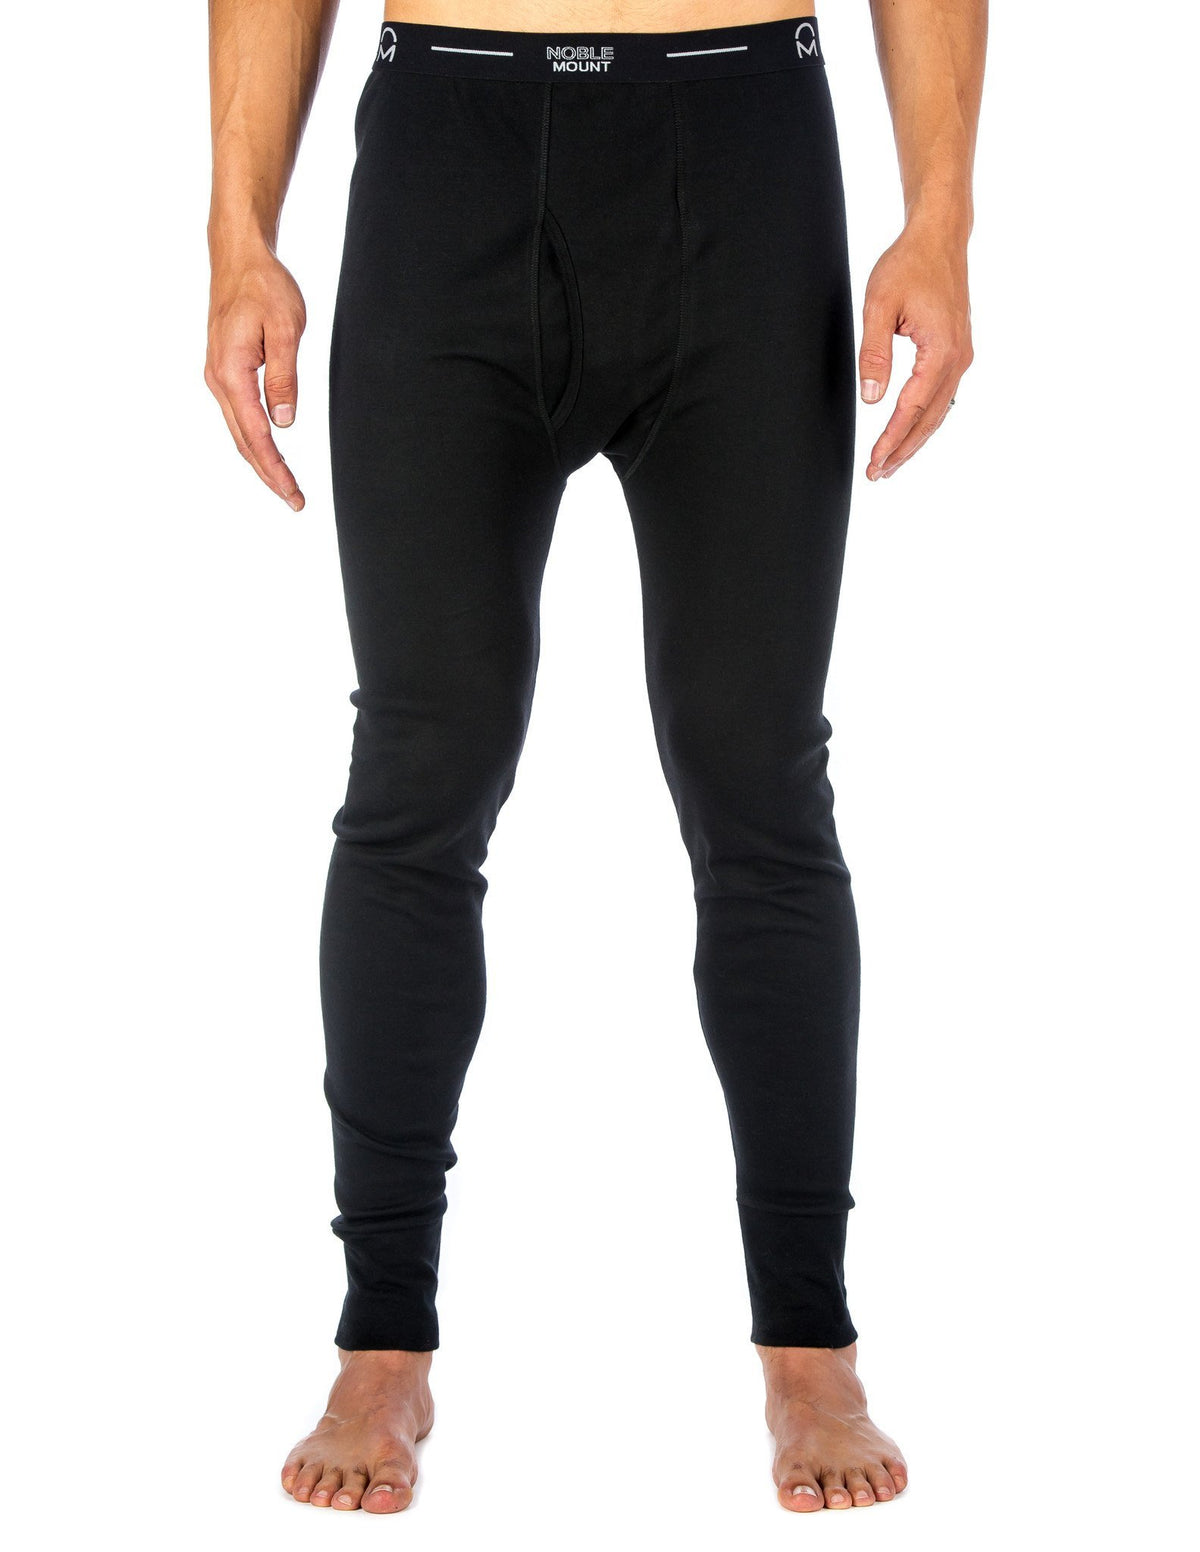 Men's 'Soft Comfort' Premium Thermal Long John Pants - Black